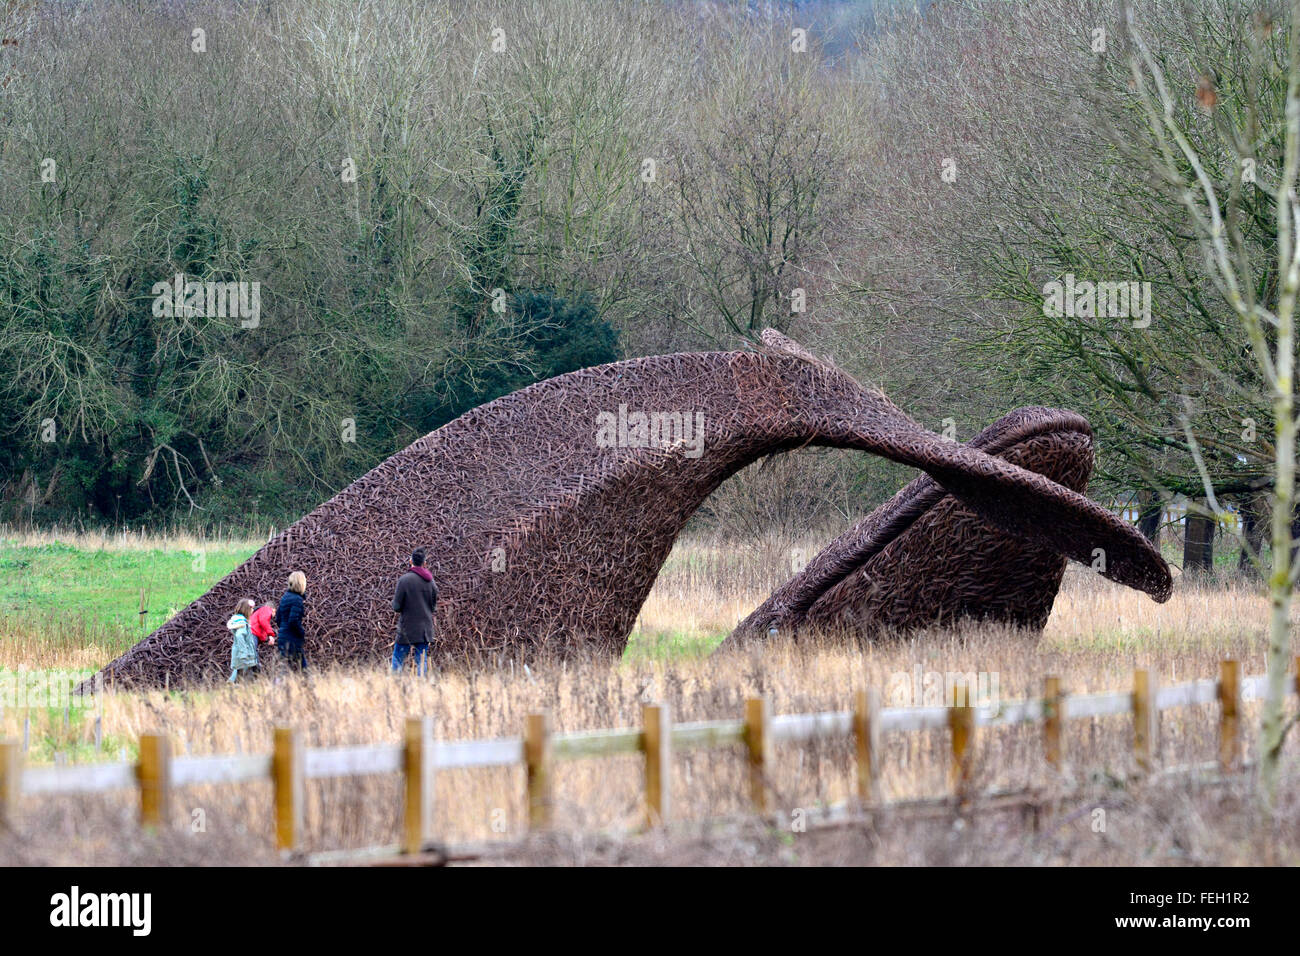 Bristol, Royaume-Uni. 7 Février, 2016. La baleine en osier fabriqués à partir de willow cultivés sur la sumerset niveaux. la baleine dans maintenant vu dans les champs à côté de l'entrée en Portway Bristol.Personnes vu prendre un gros plan sur le terrain. ROBERT TIMONEY/AlamyLiveNews Banque D'Images